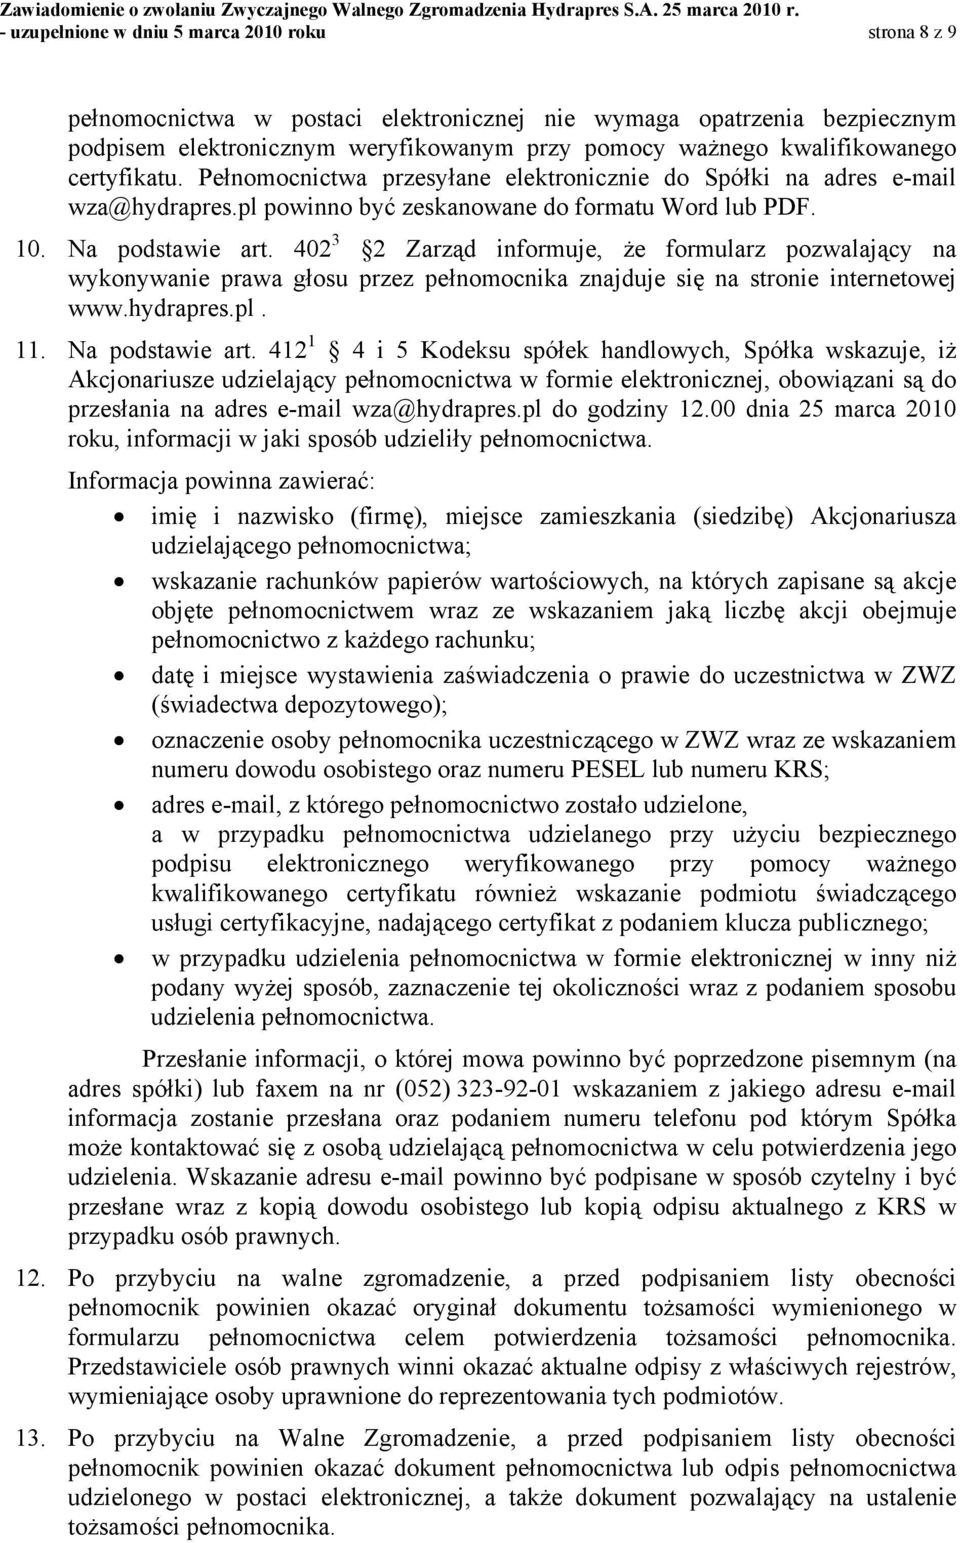 402 3 2 Zarząd informuje, że formularz pozwalający na wykonywanie prawa głosu przez pełnomocnika znajduje się na stronie internetowej www.hydrapres.pl. 11. Na podstawie art.